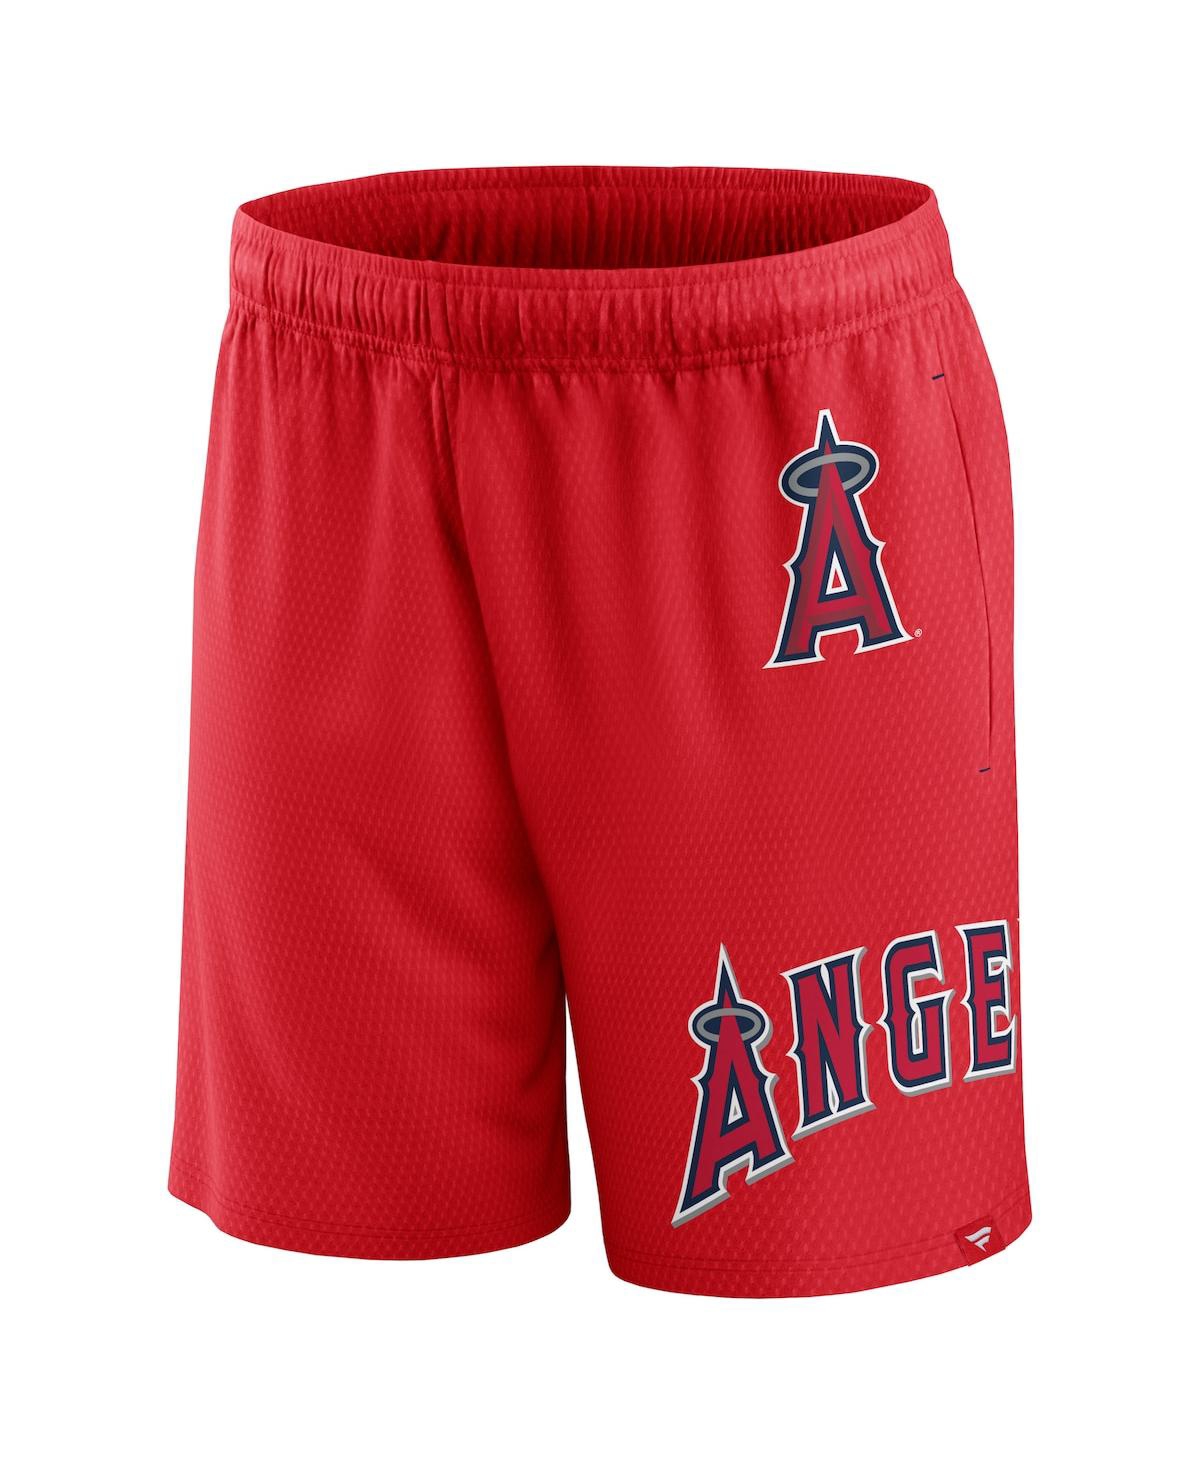 Shop Fanatics Men's  Red Los Angeles Angels Clincher Mesh Shorts